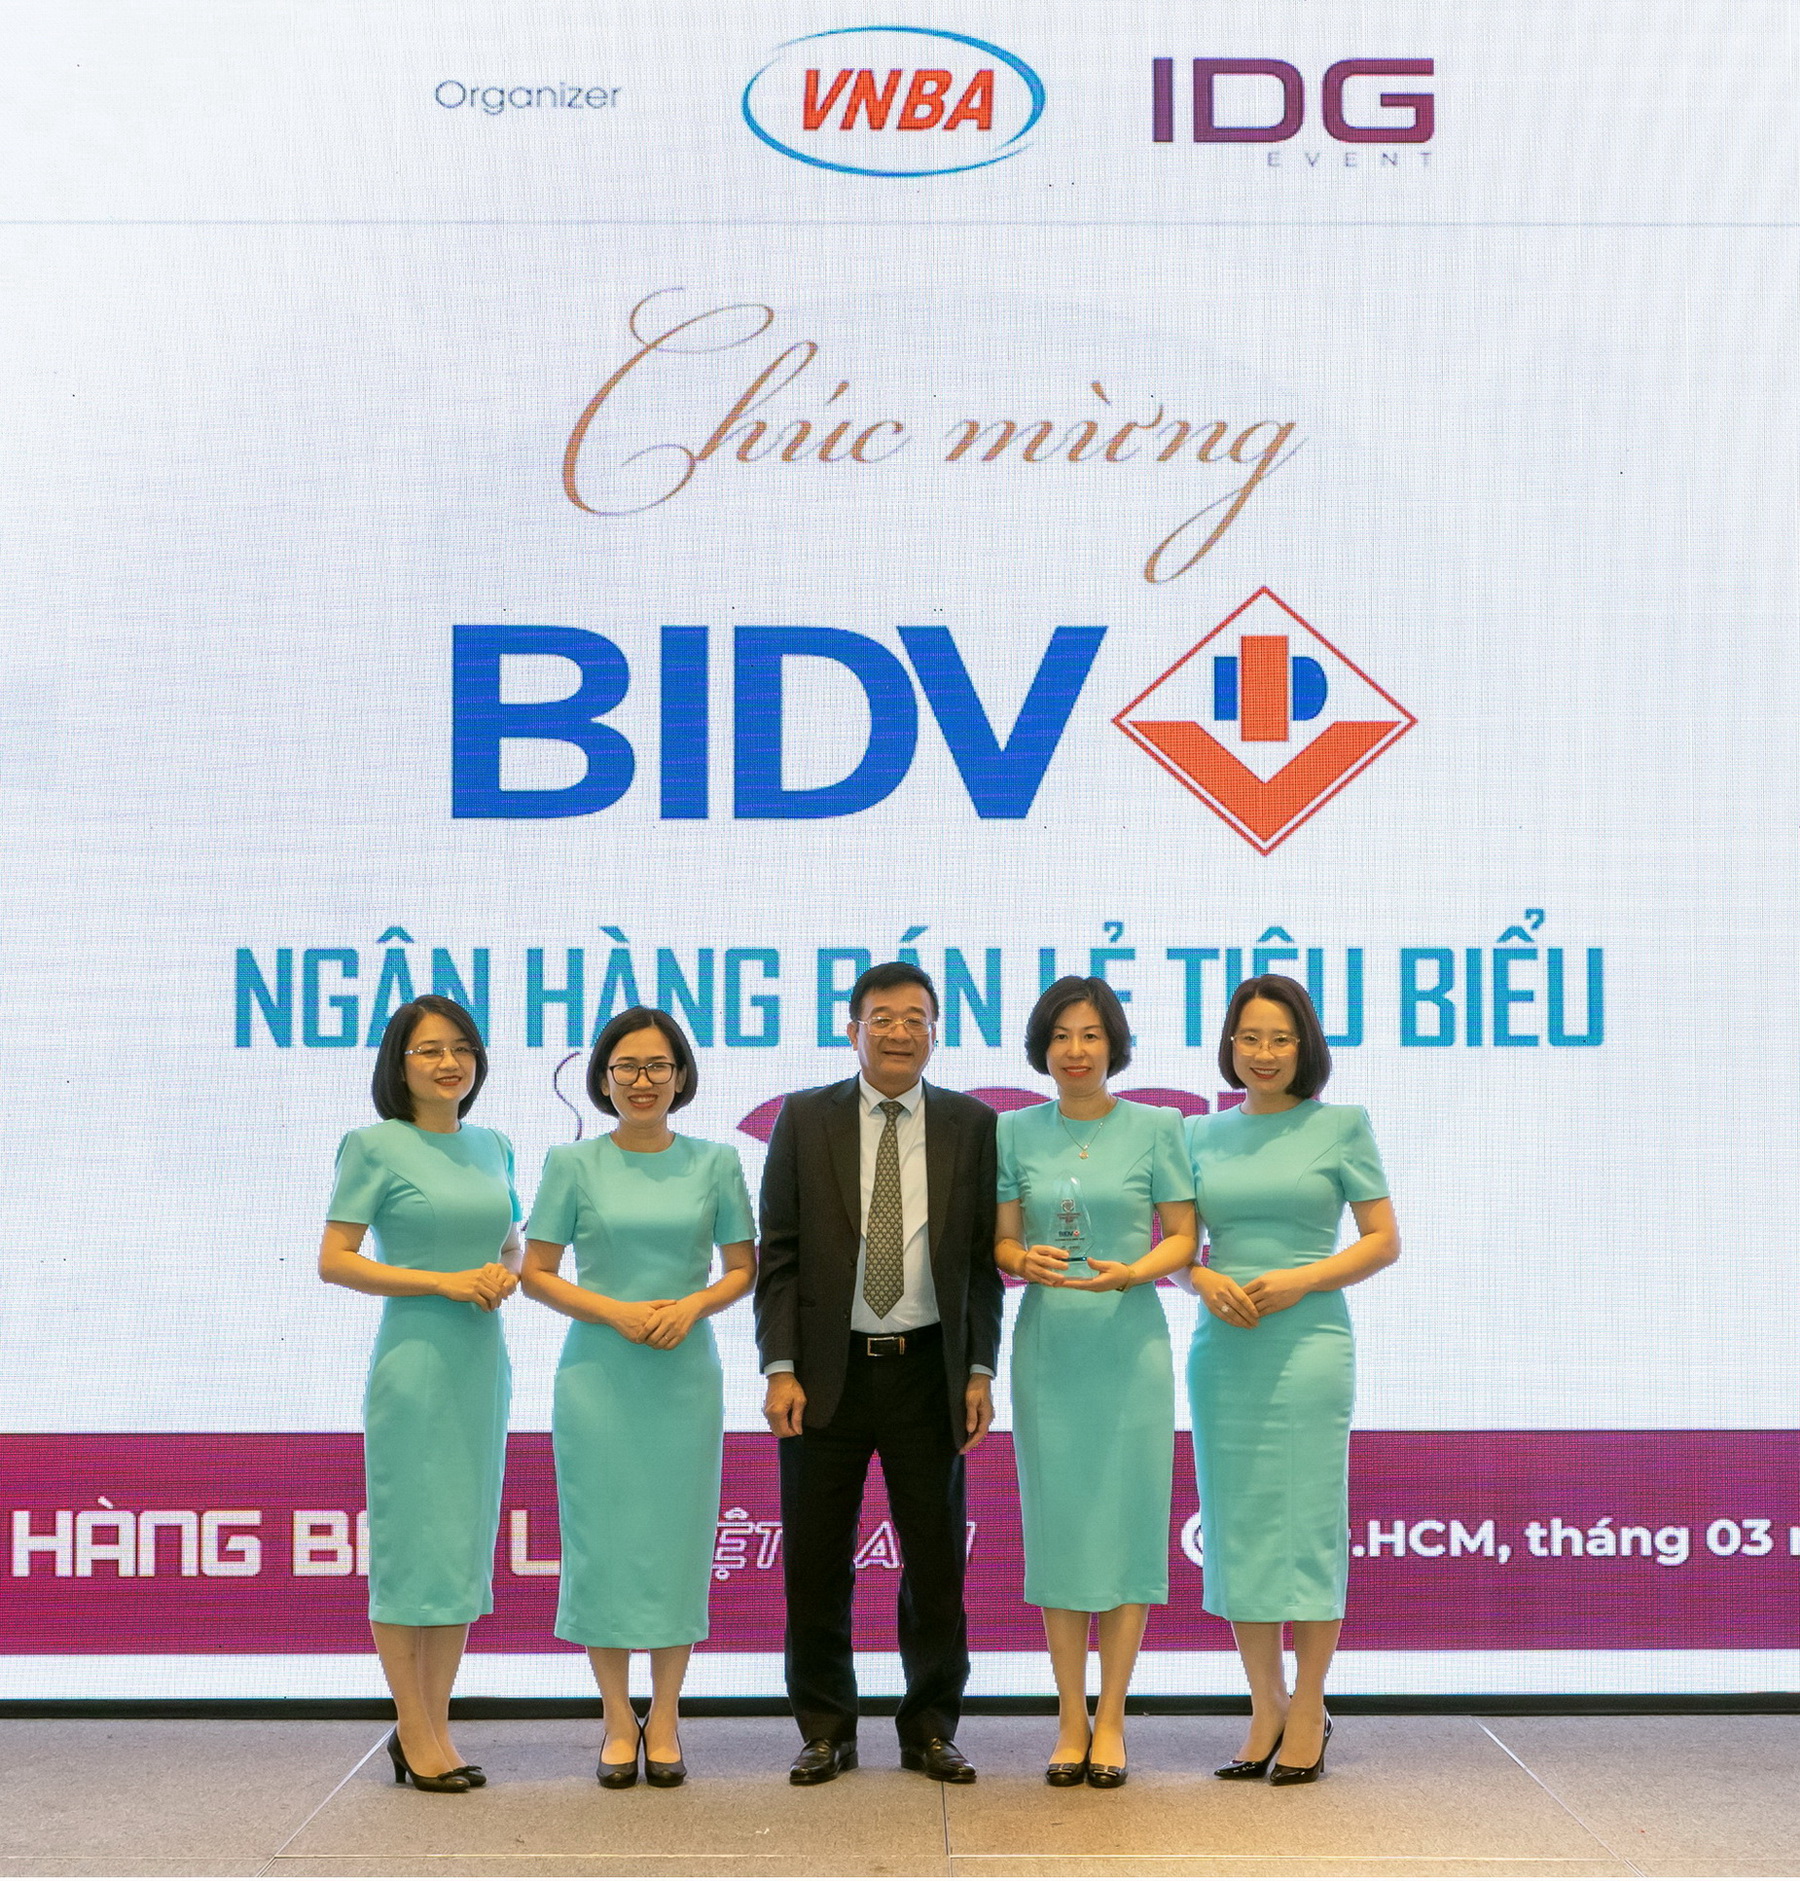 Kinh tế - BIDV nhận đồng thời 04 giải thưởng Ngân hàng Việt Nam Tiêu biểu